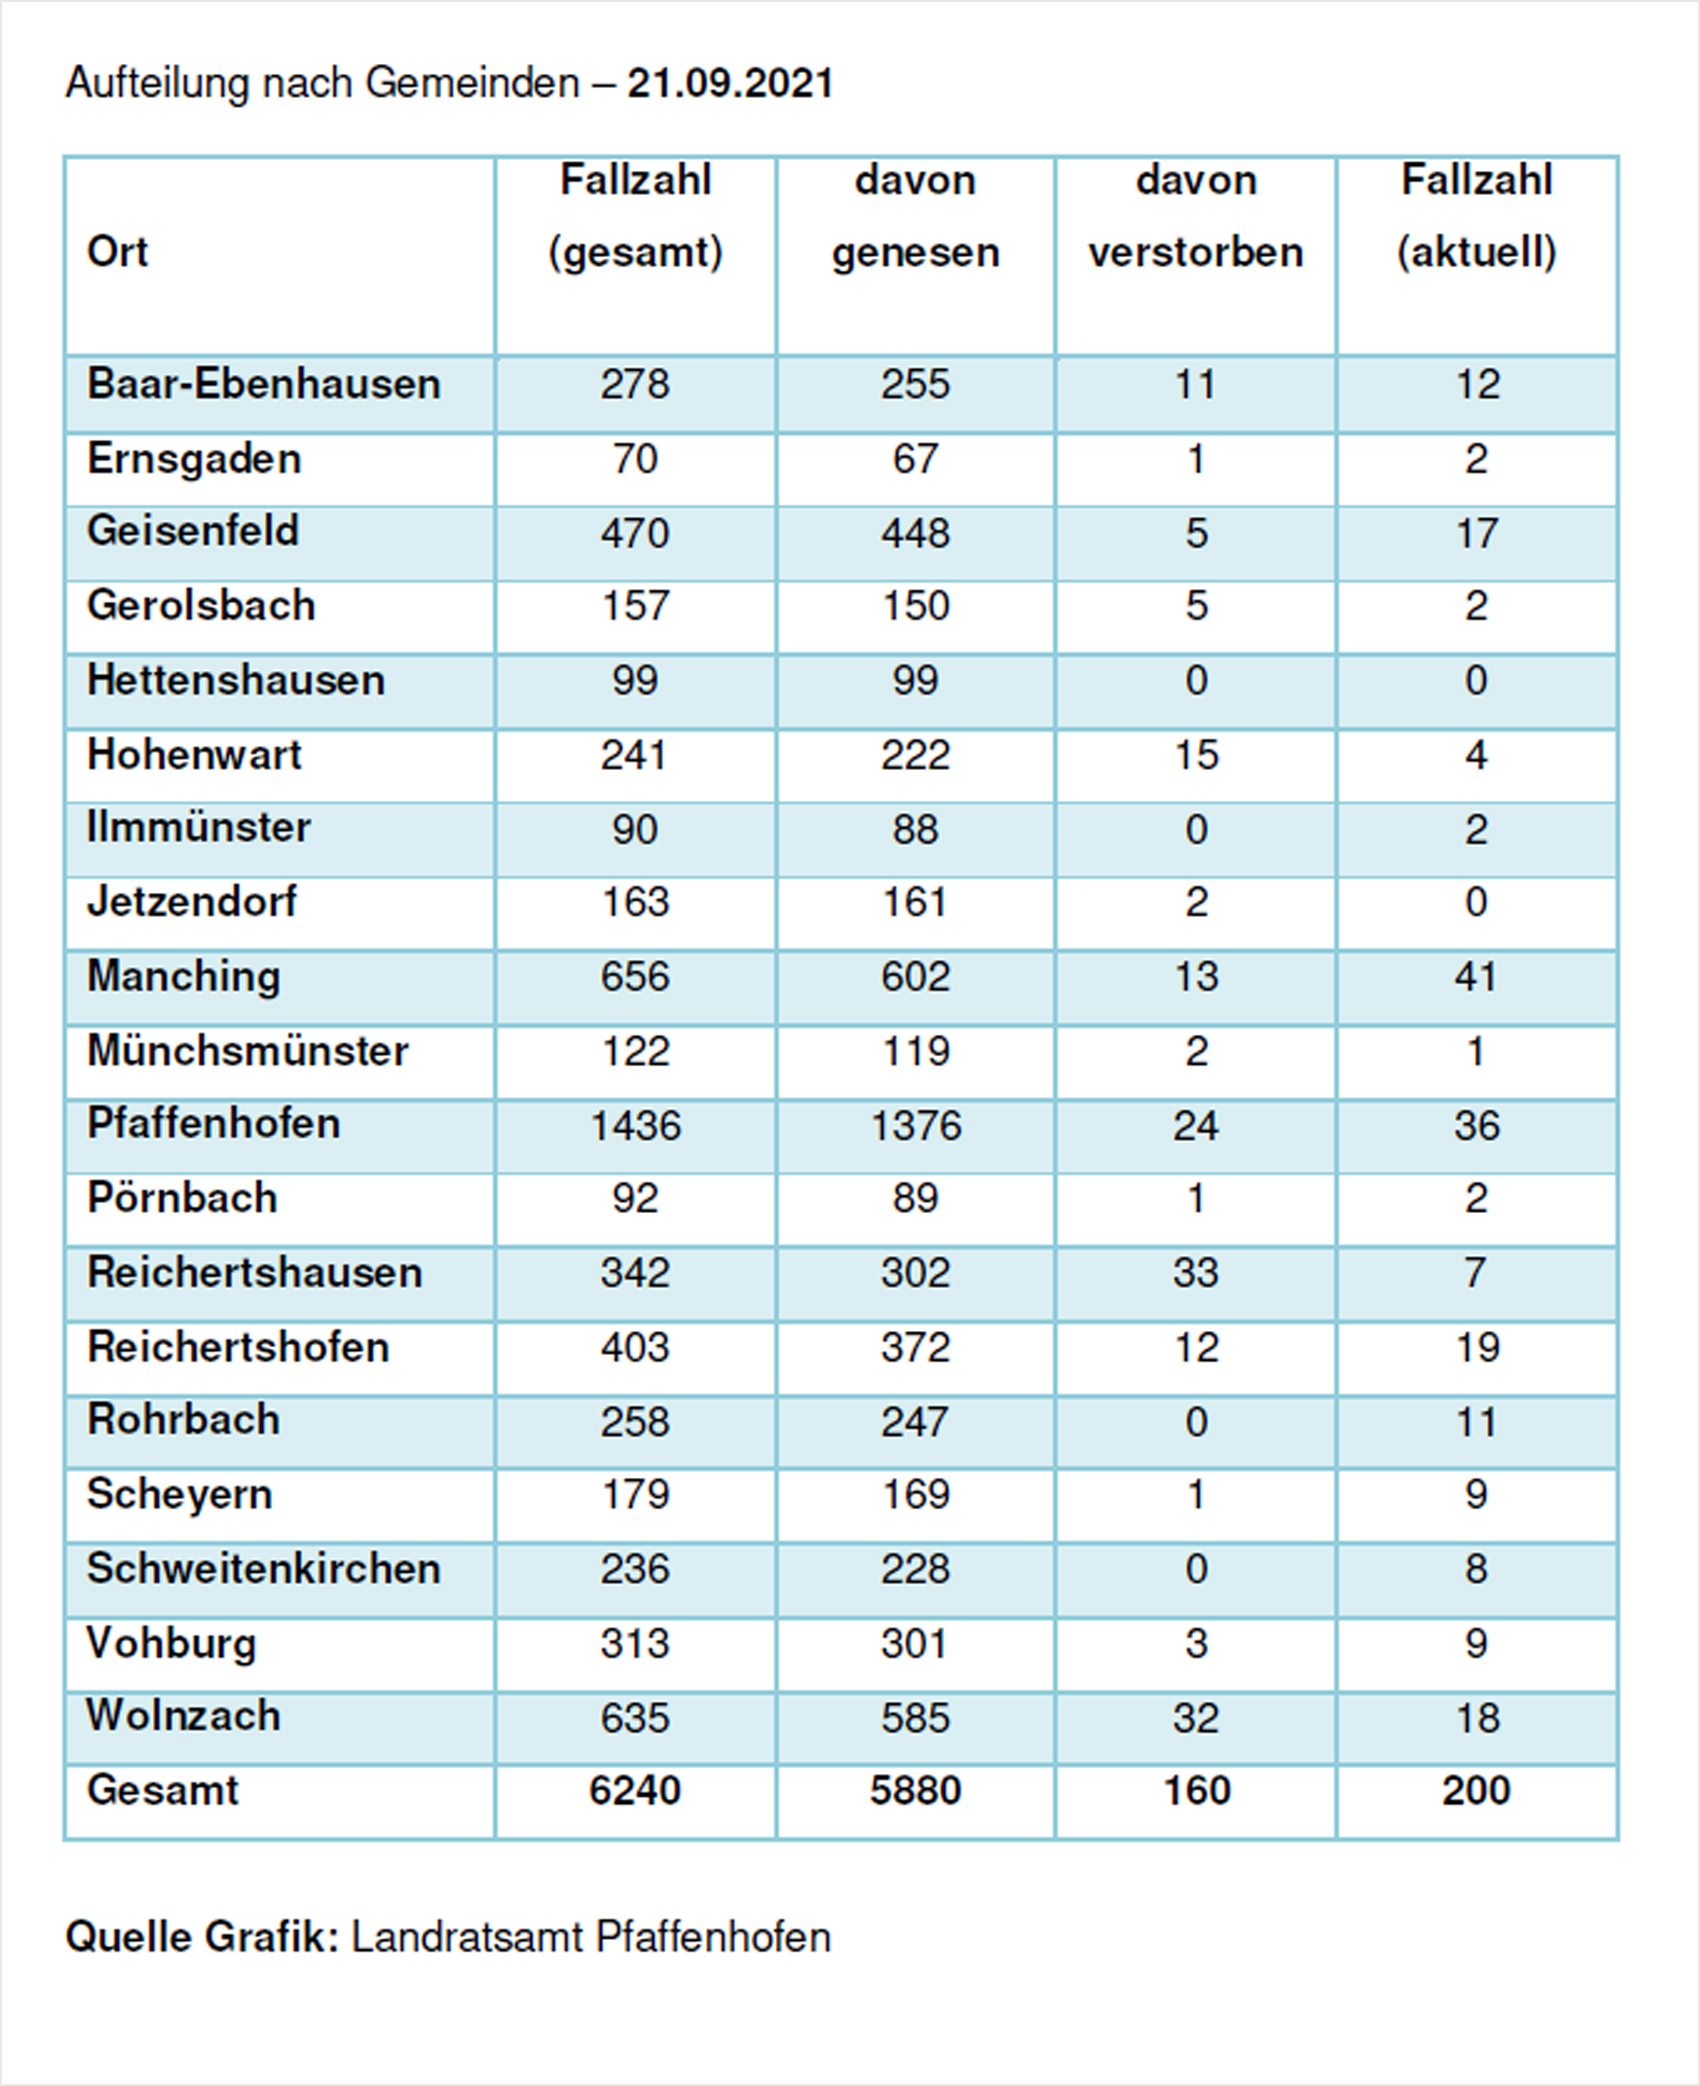 Verteilung der Fallzahlen auf die Landkreisgemeinden - 21.09.2021